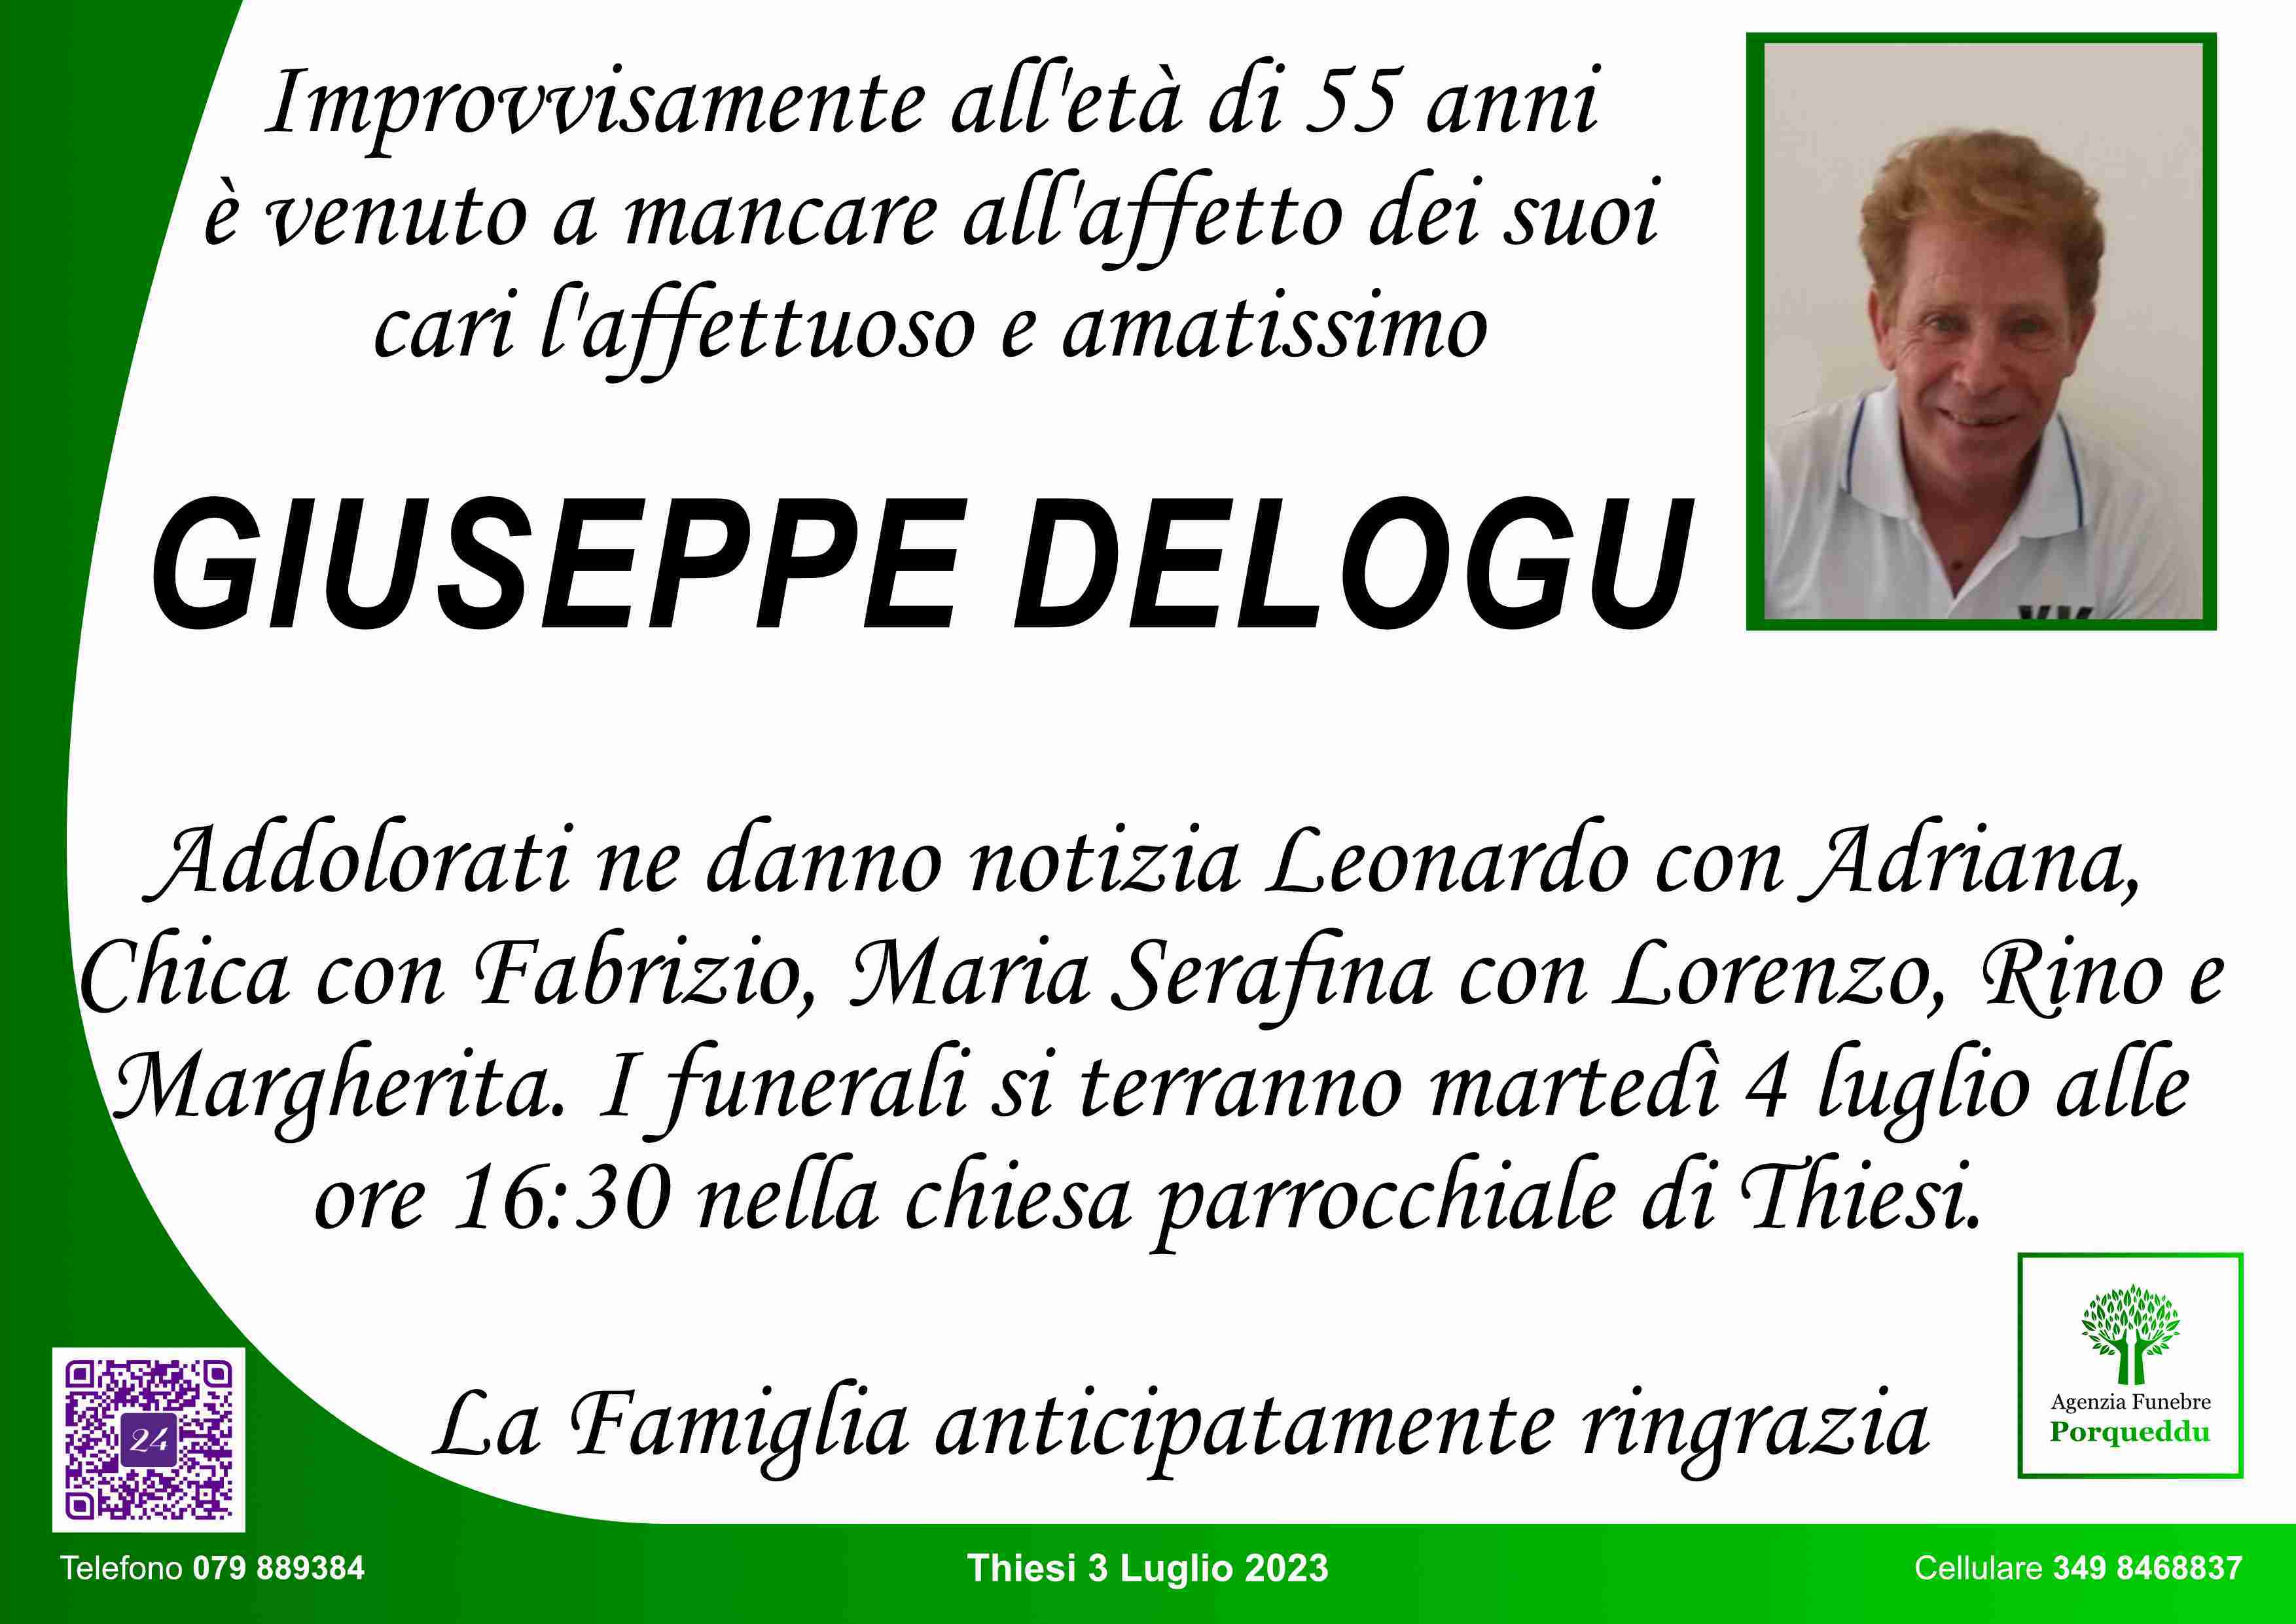 Giuseppe Delogu